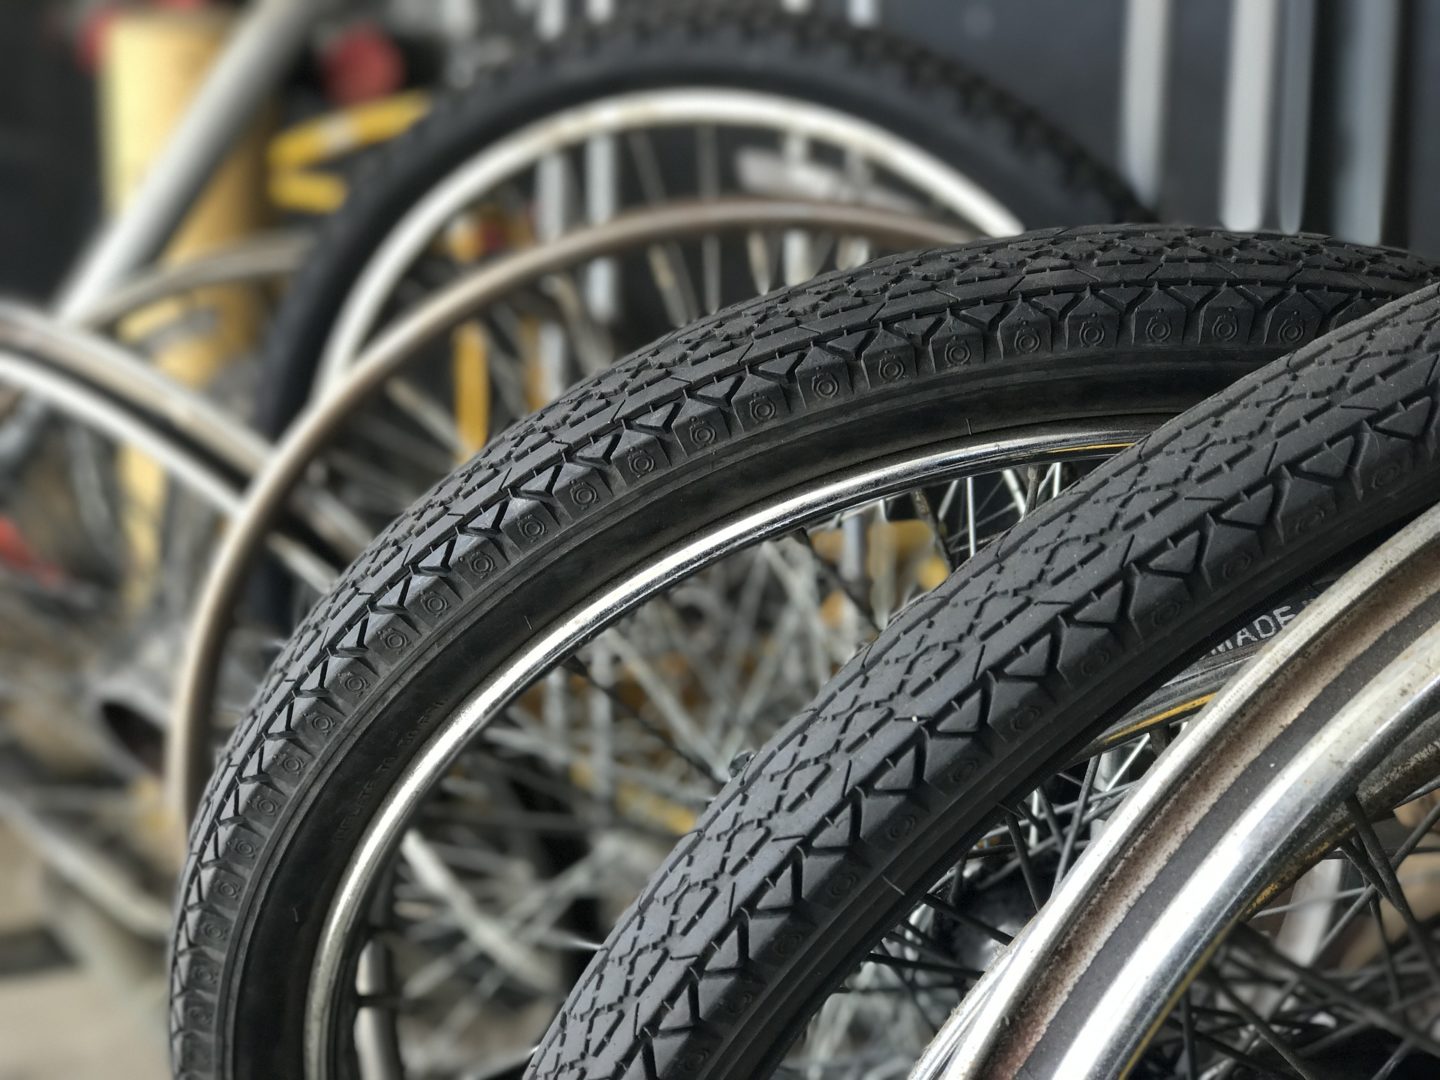 Vente velo neuf occasion equipement cycliste entretien reparation Loudeac Cycles Mace - Cycles et équipements